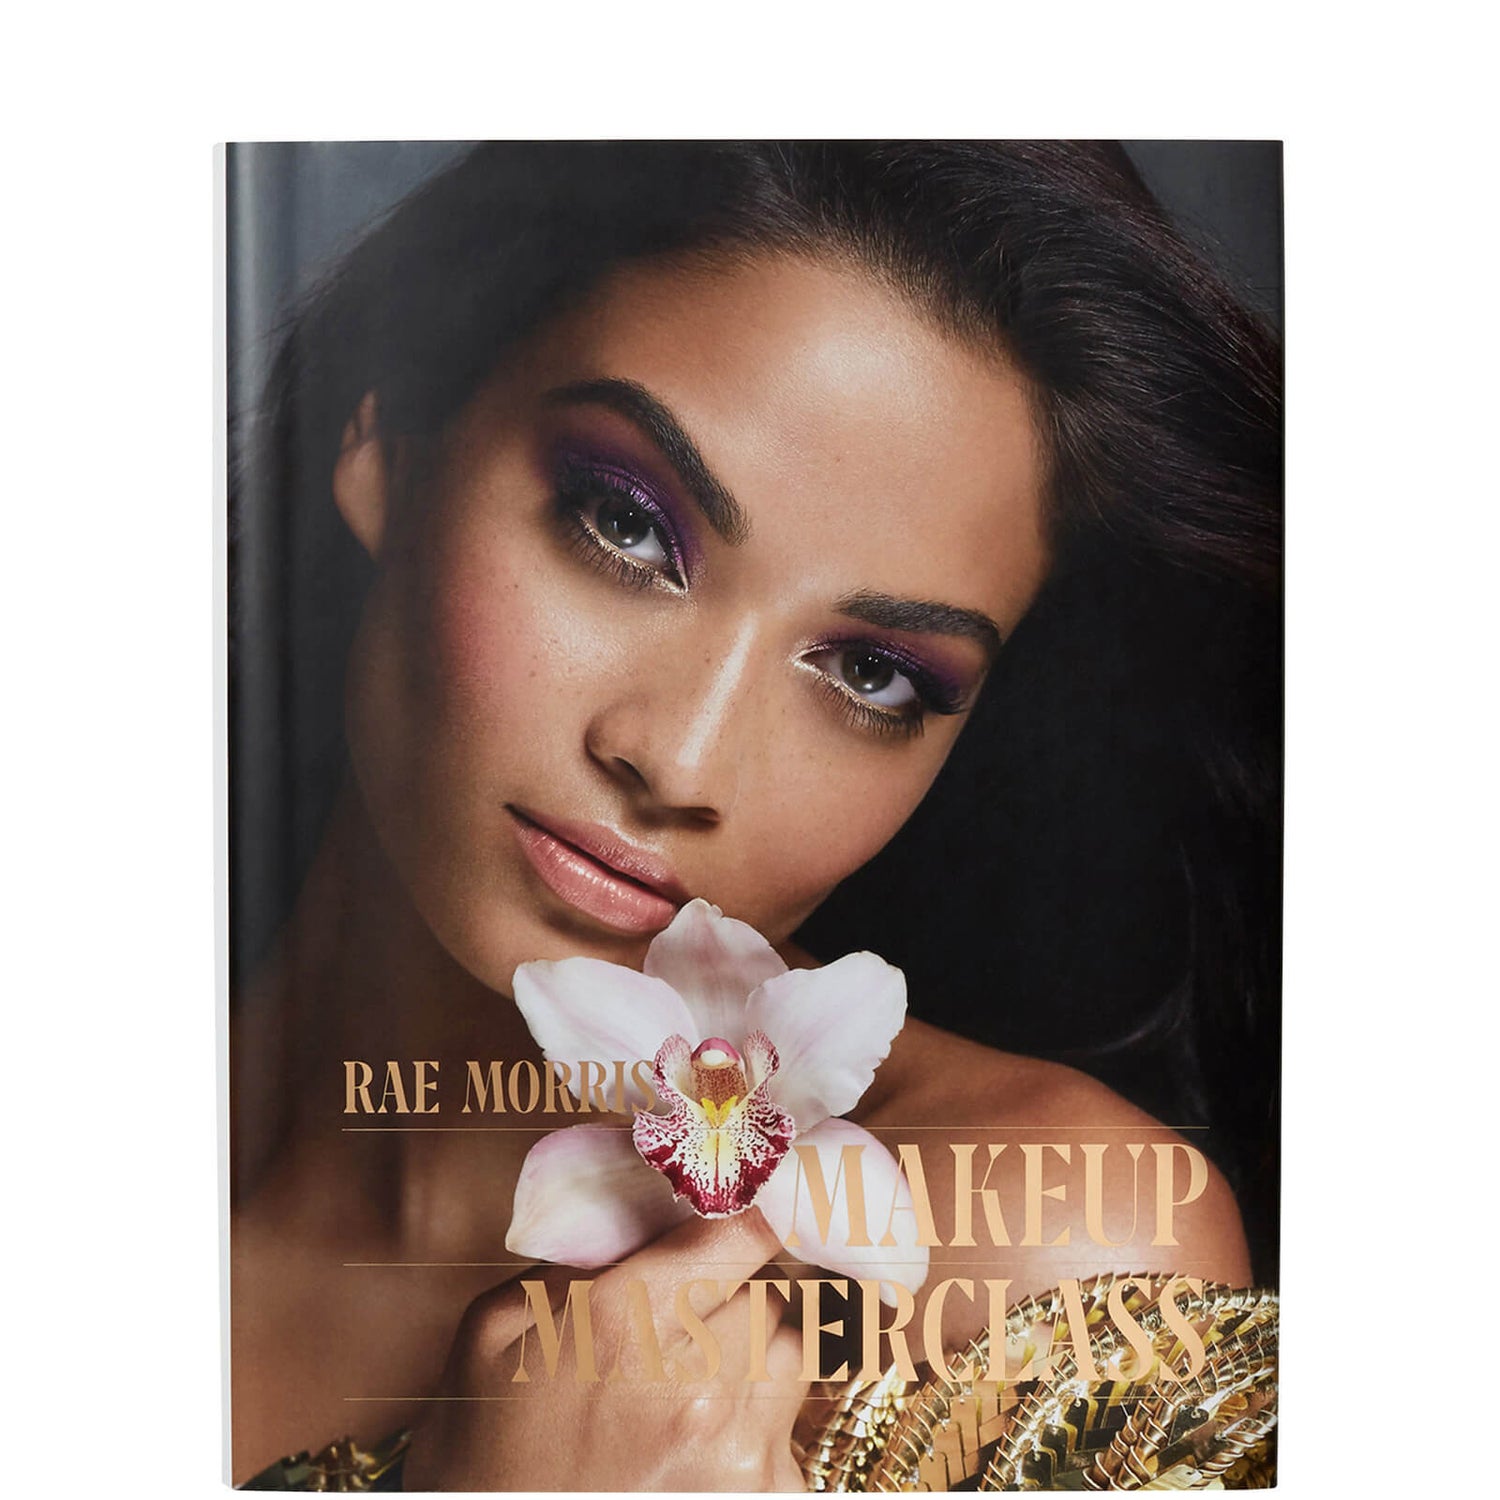 Rae Morris Makeup Masterclass Book